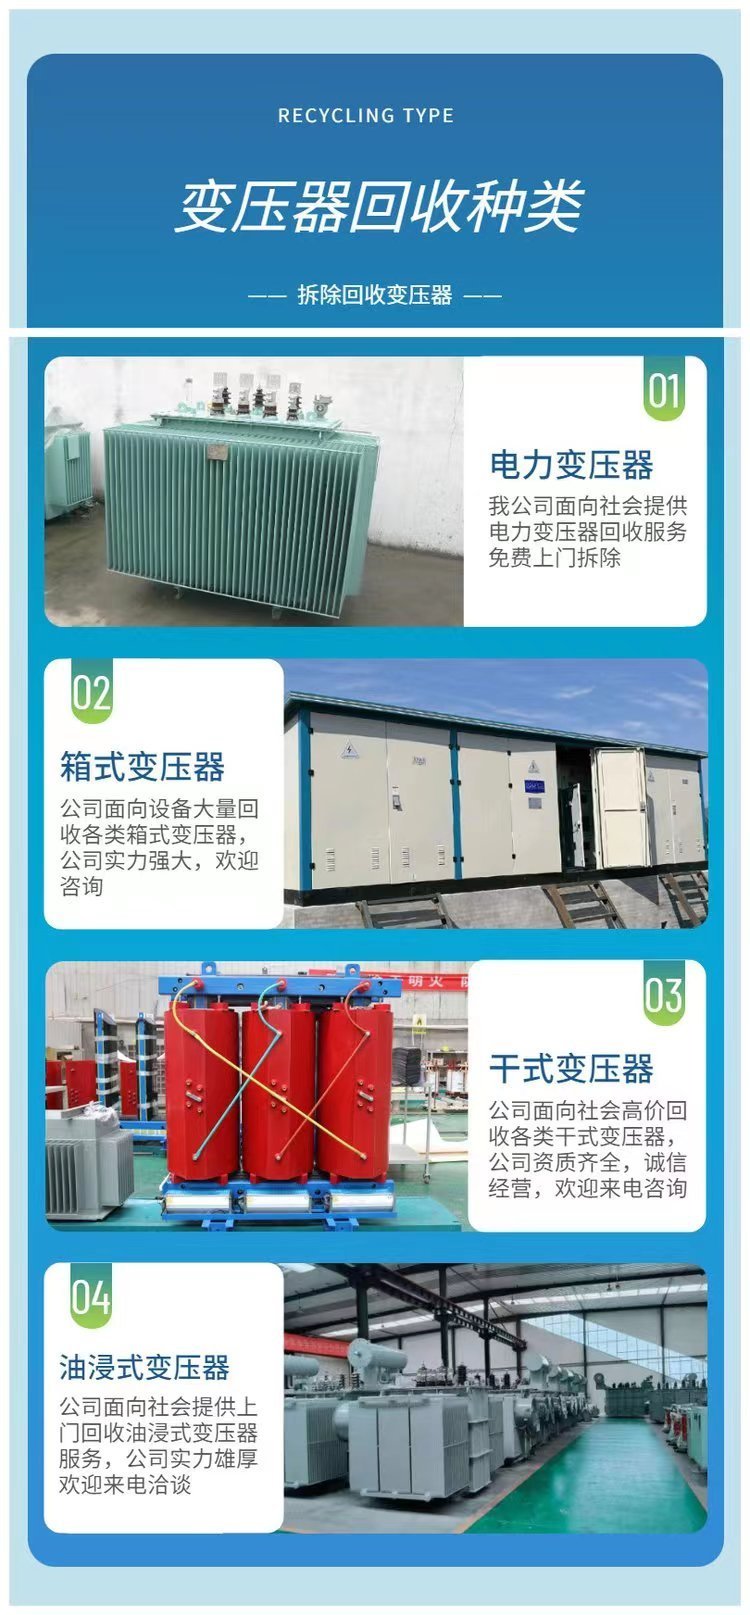 广州增城工地临时变压器回收配电房收购公司负责报价